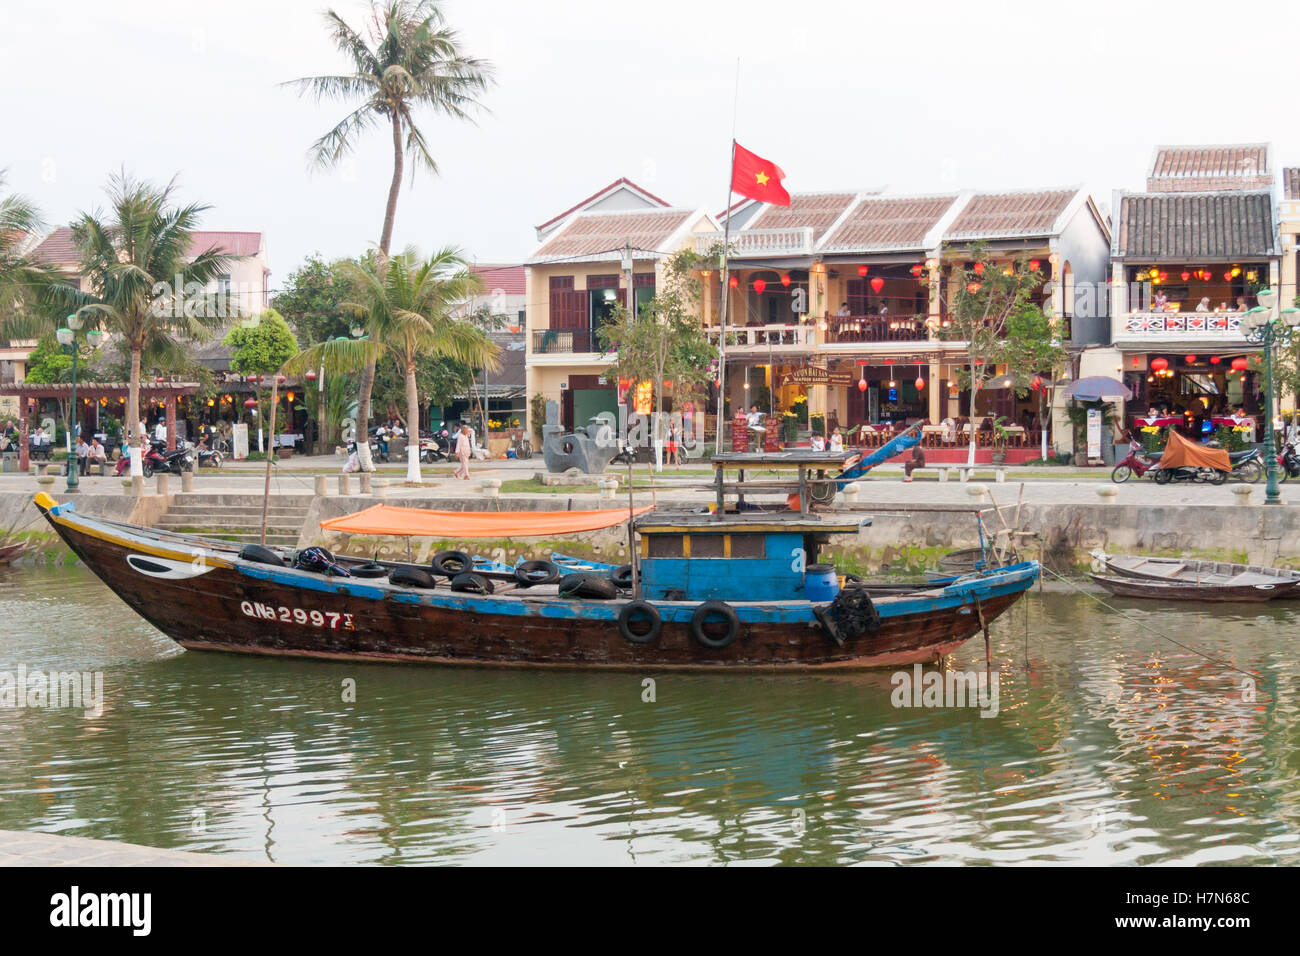 Bateau de pêche amarré sur la rivière avec des restaurants dans l'arrière-plan, Hoi An, Vietnam Banque D'Images